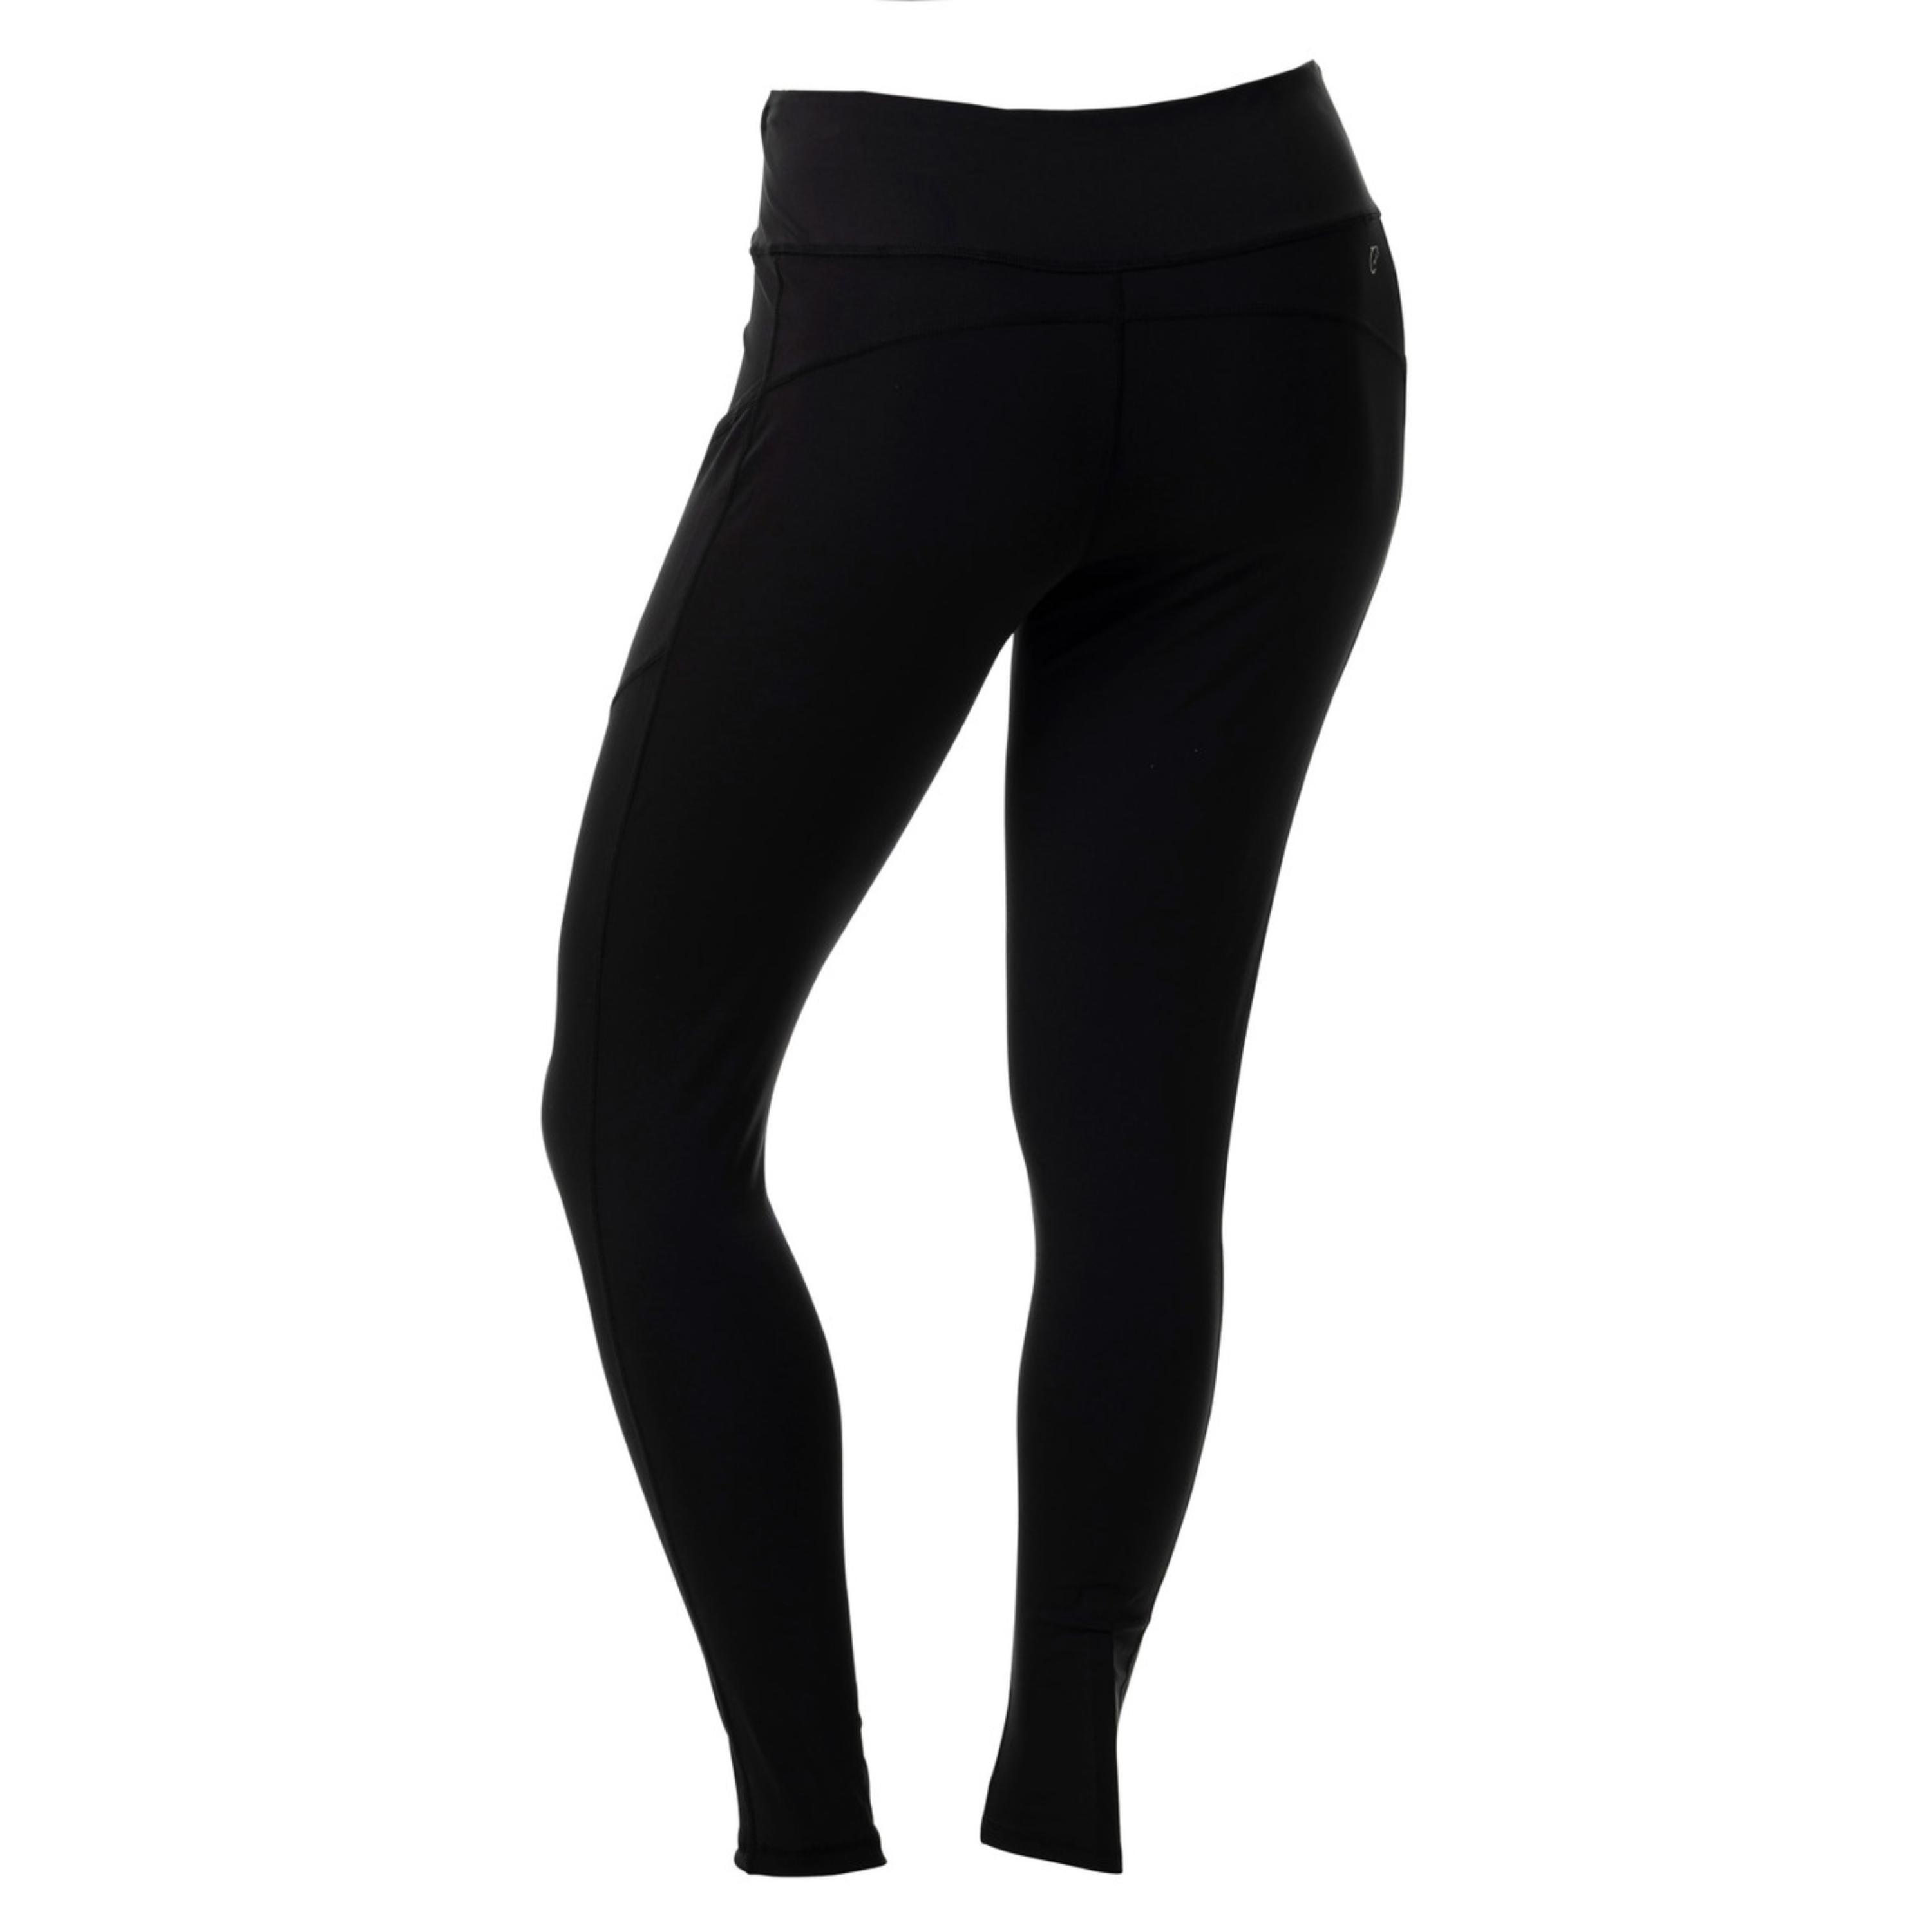 DSG Women's Momentum Full Length Legging, Large, Pure Black - Yahoo Shopping